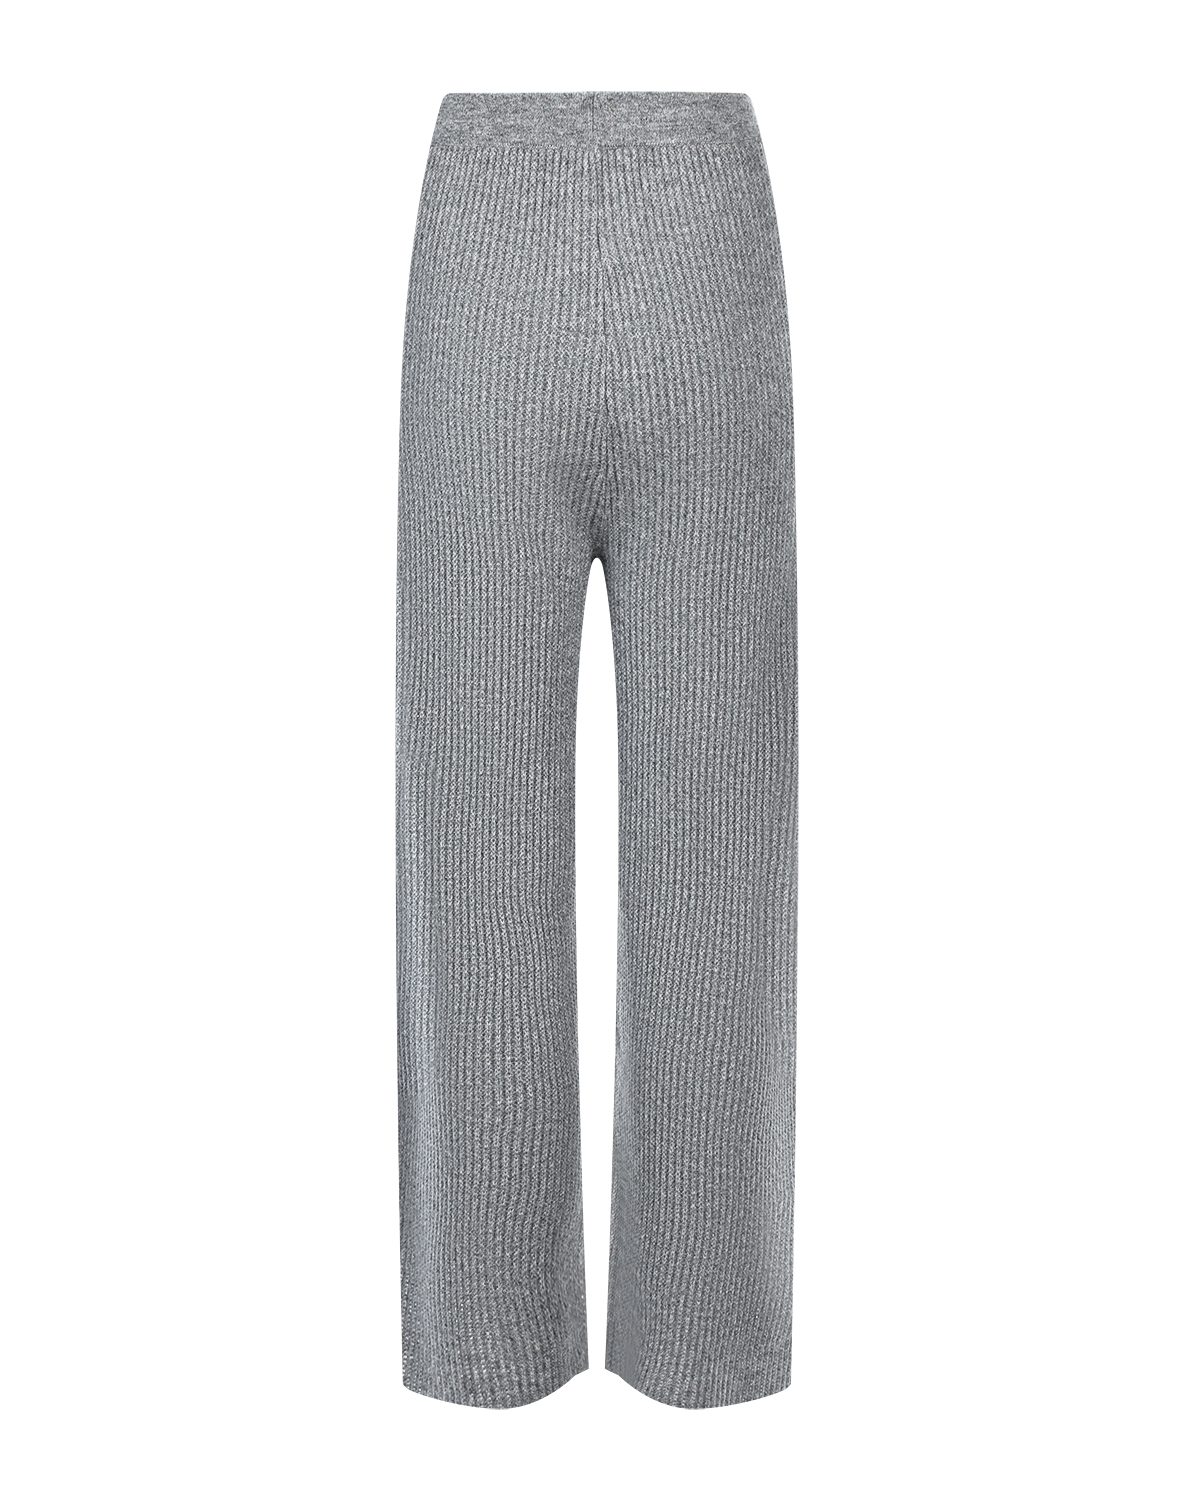 Укороченные кашемировые брюки Allude, размер 38, цвет серый - фото 6